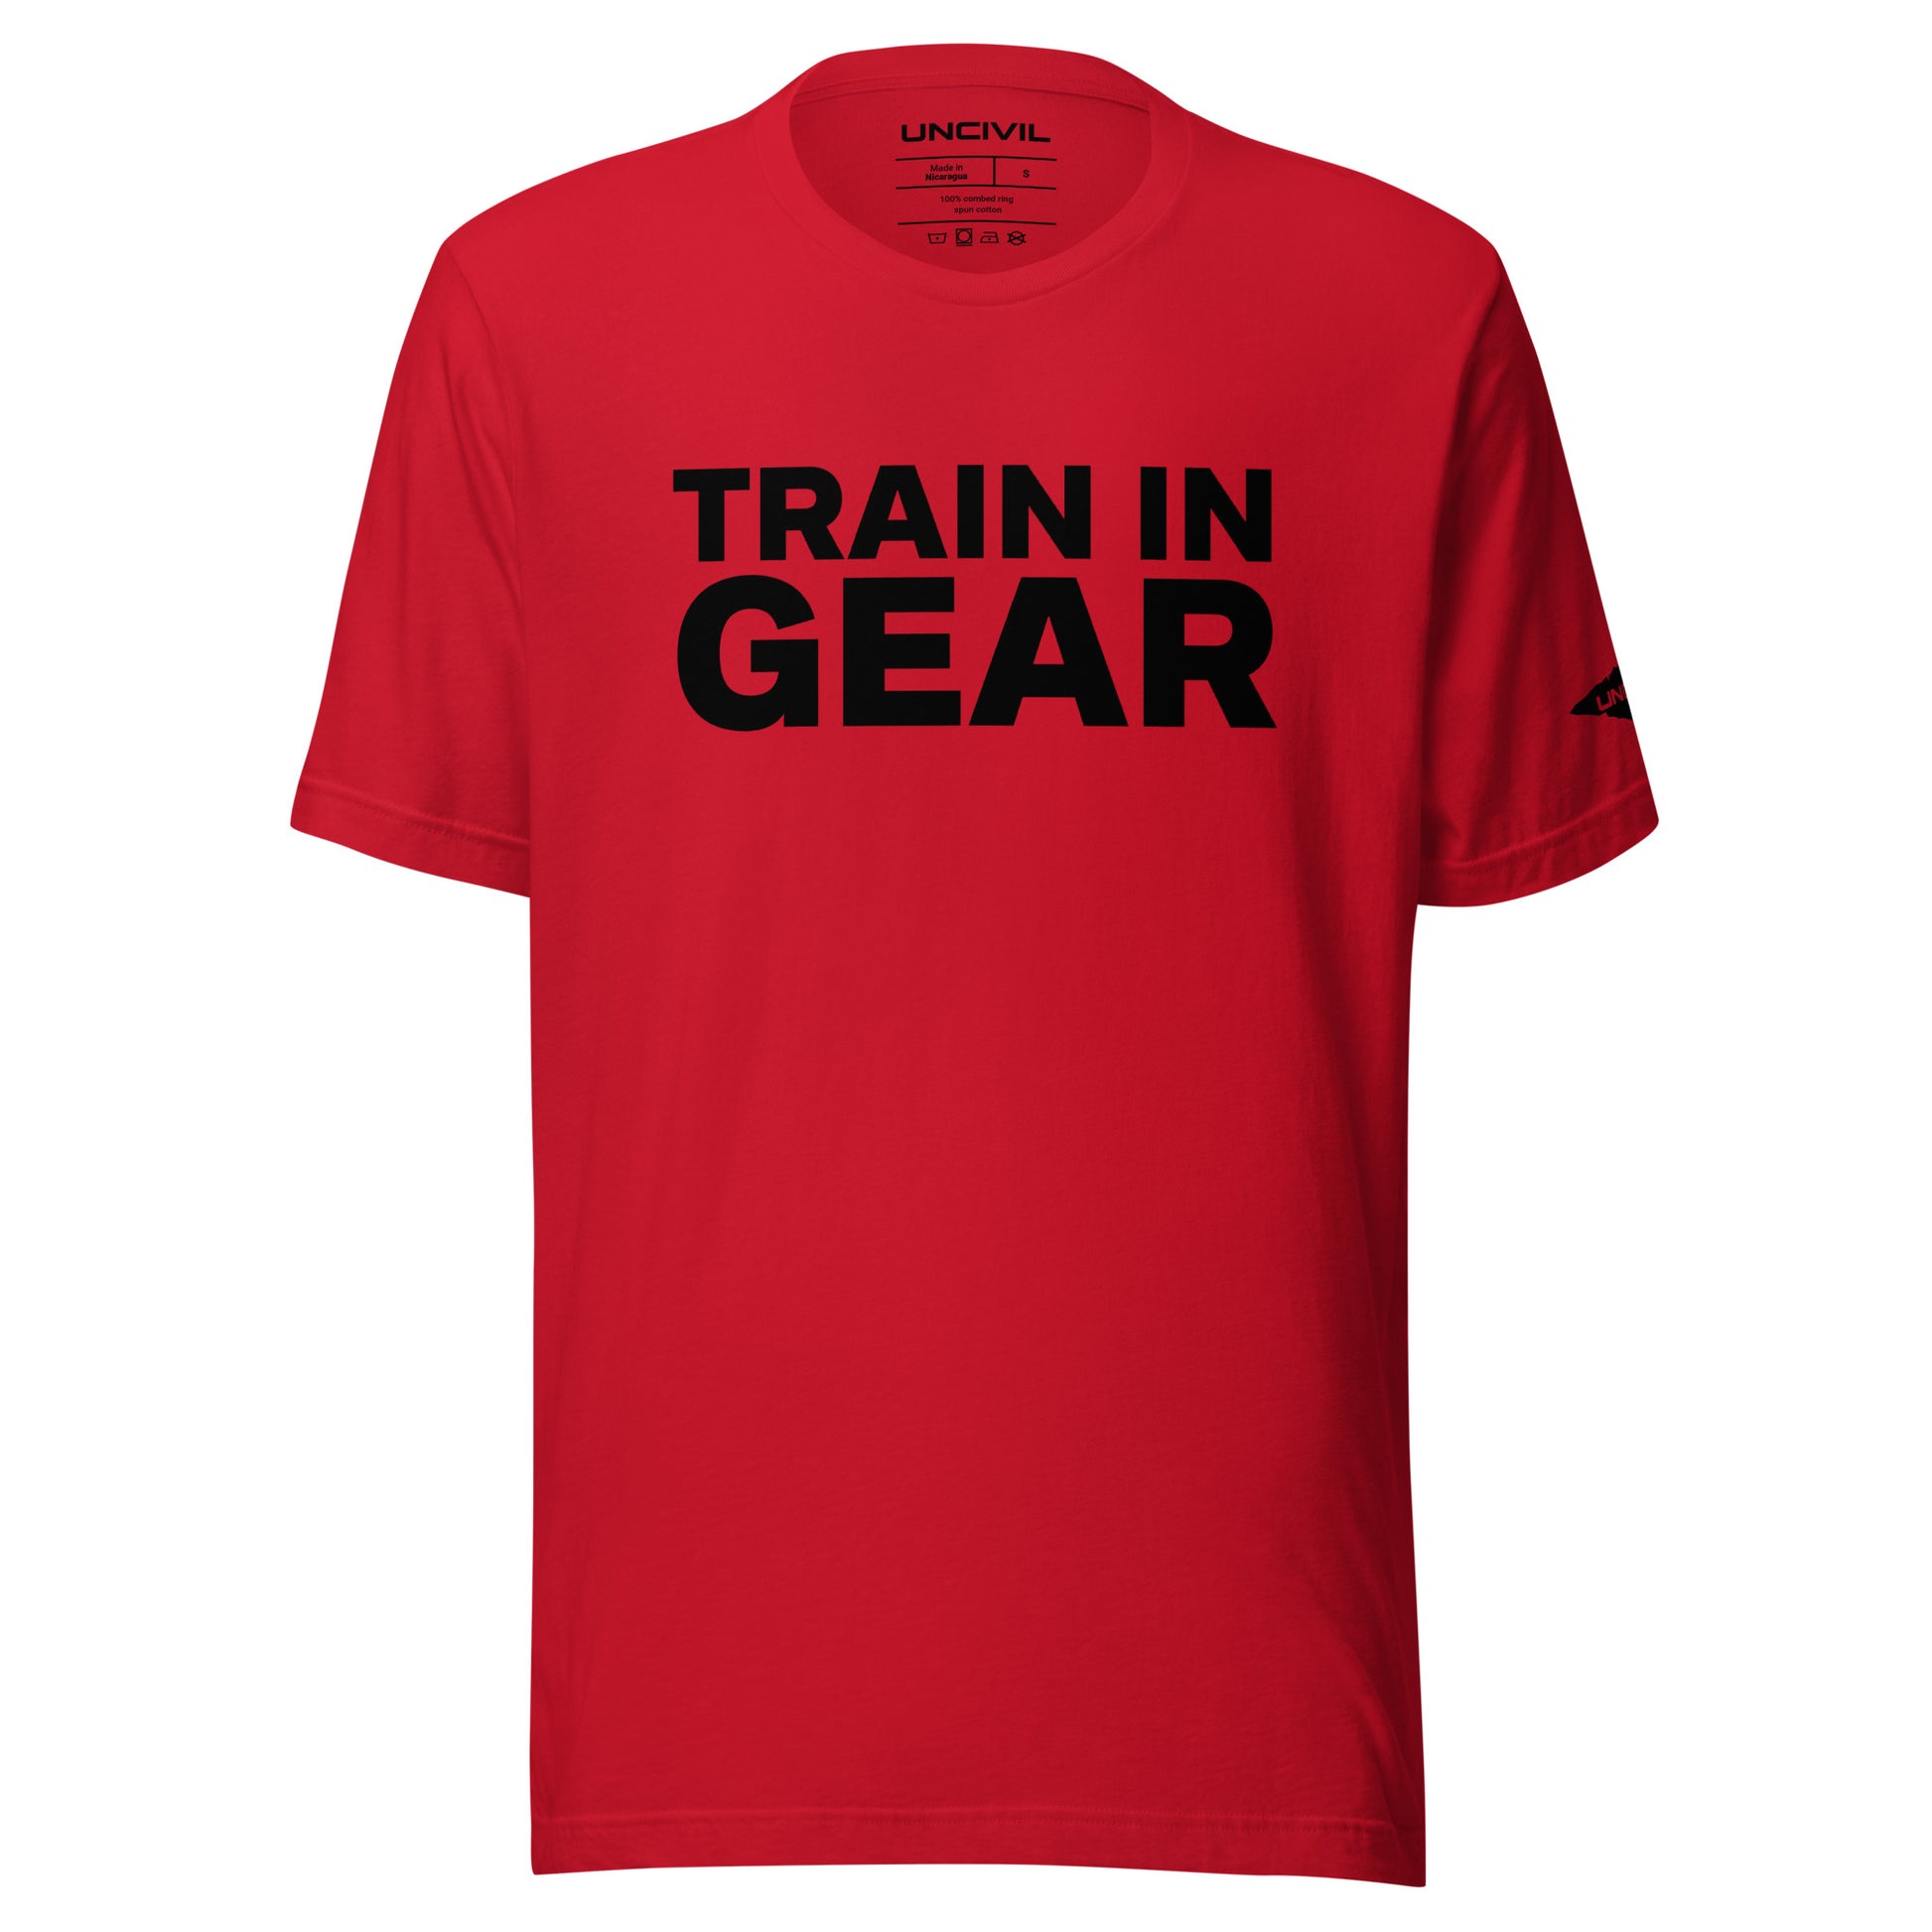 Train in Gear Firefighter shirt. Red Unisex t-shirt.